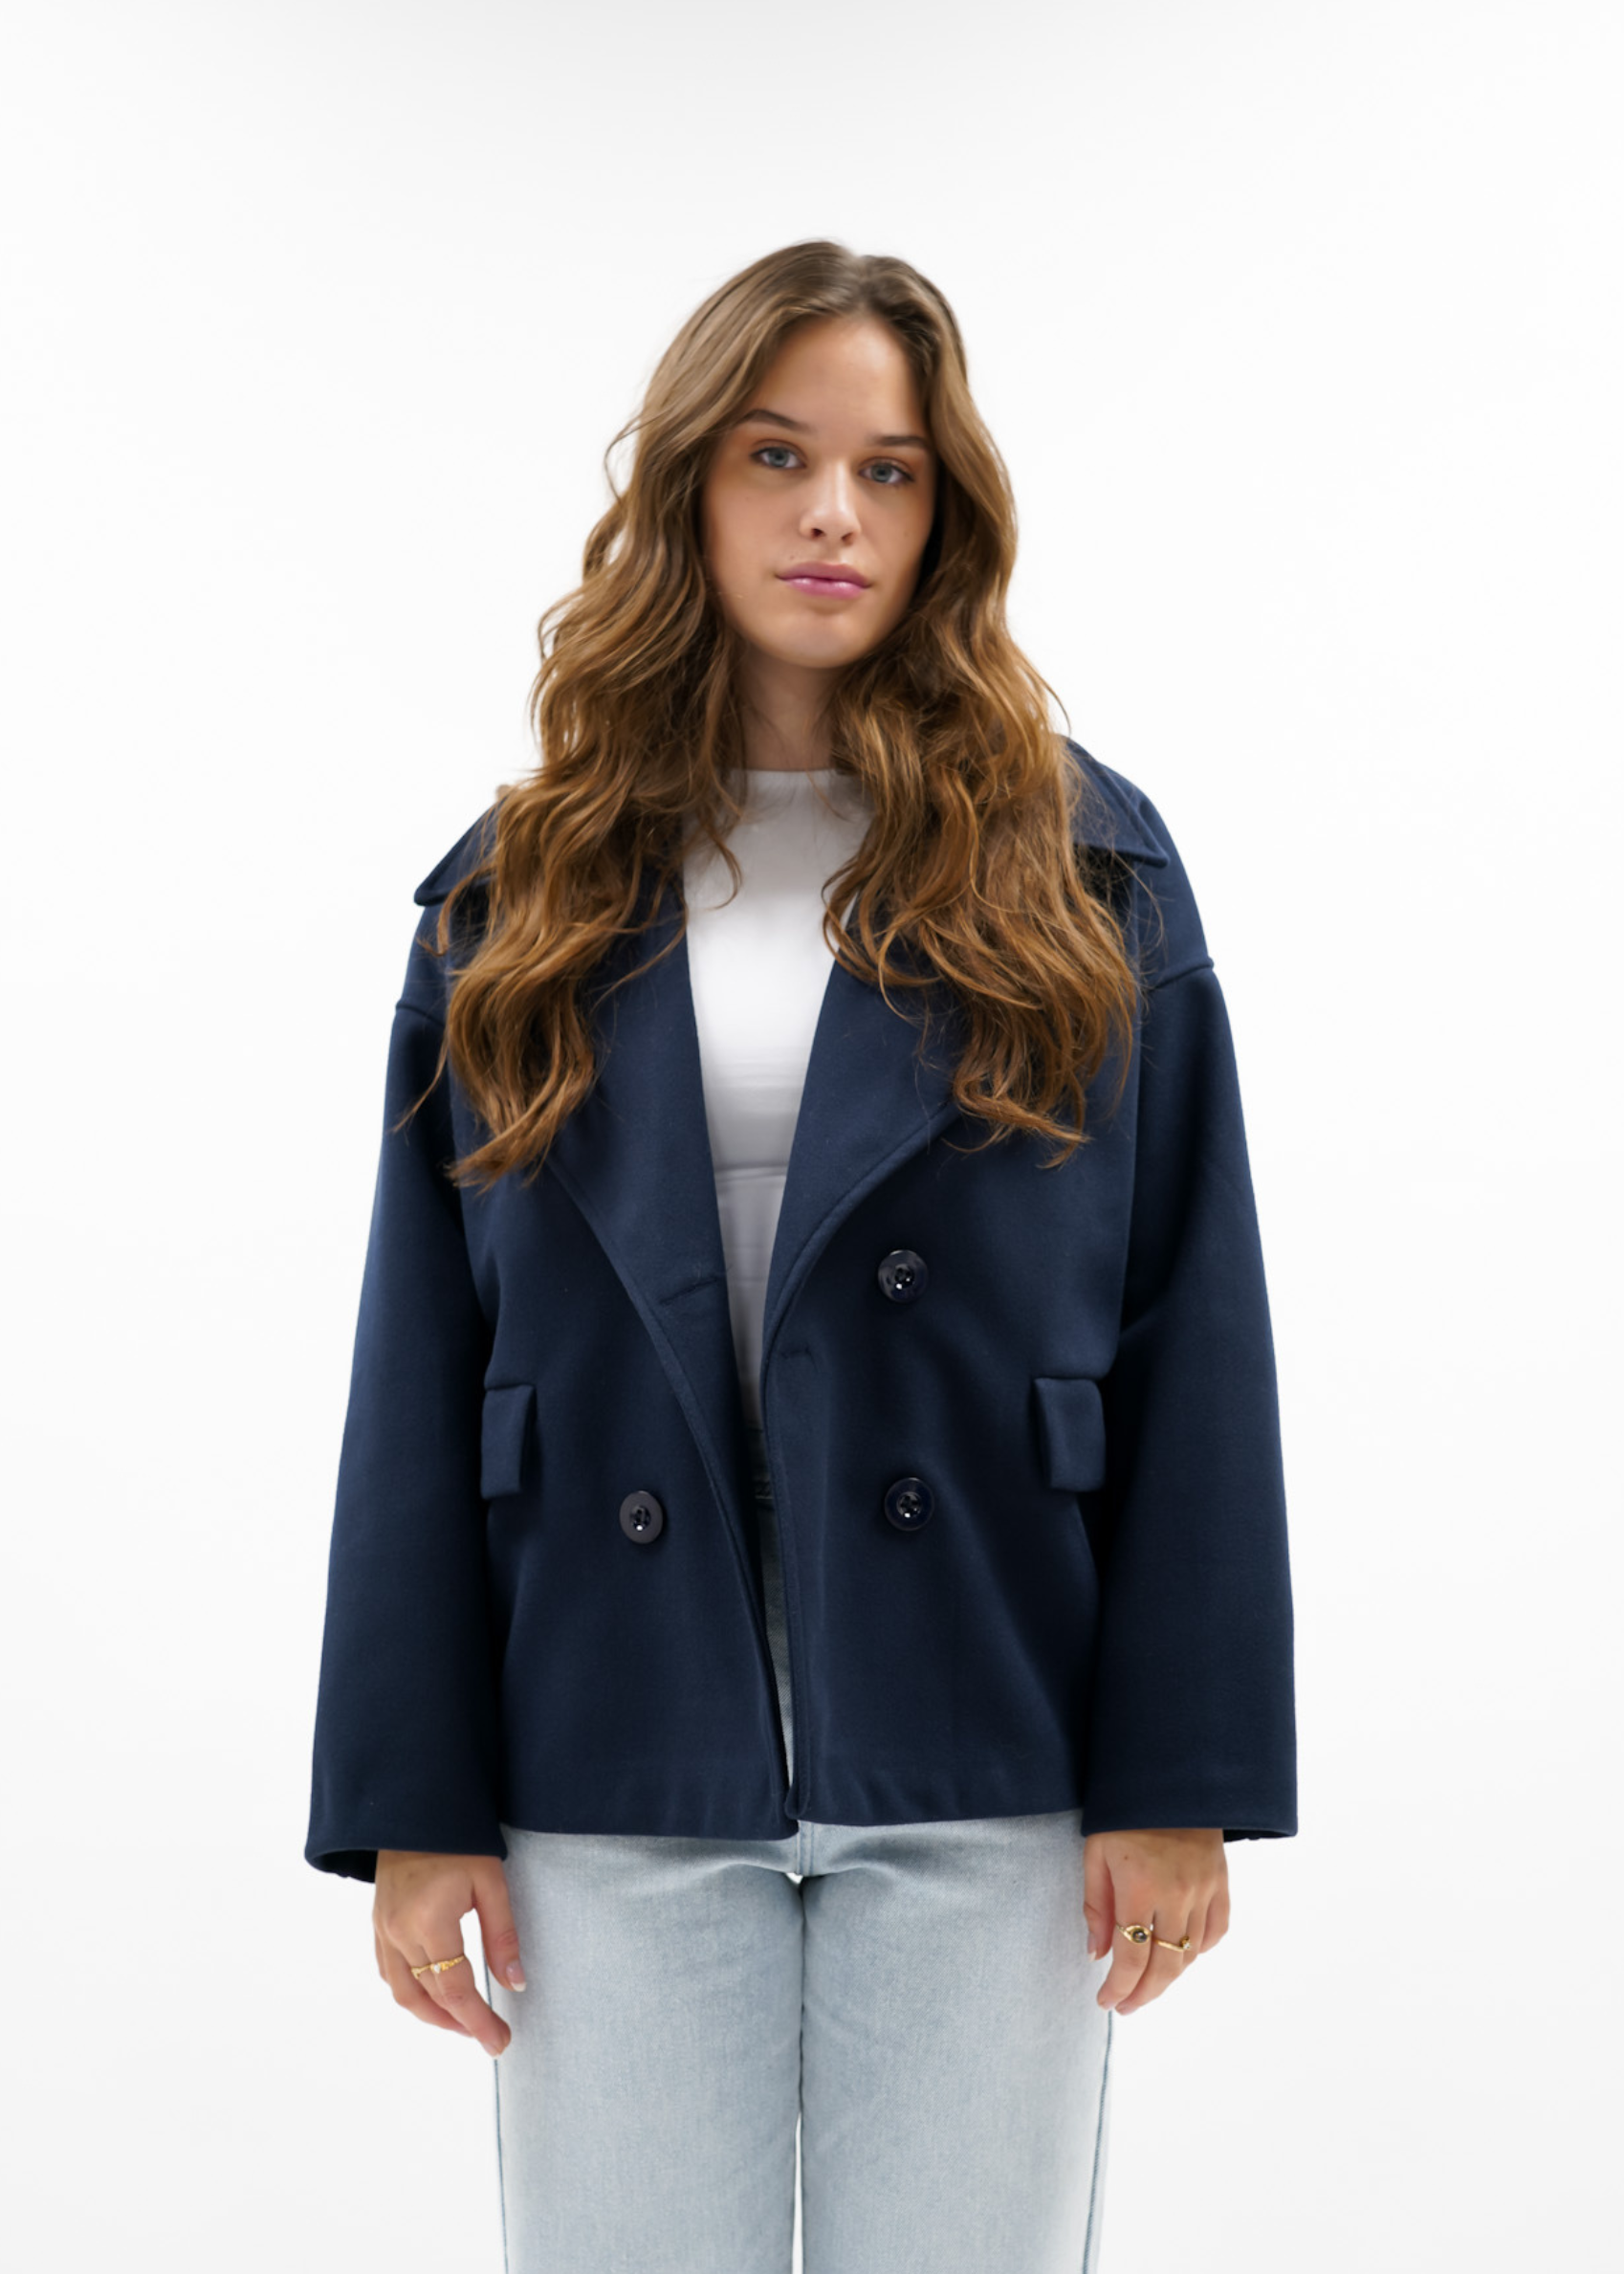 Premium - Manteau bleu nuit